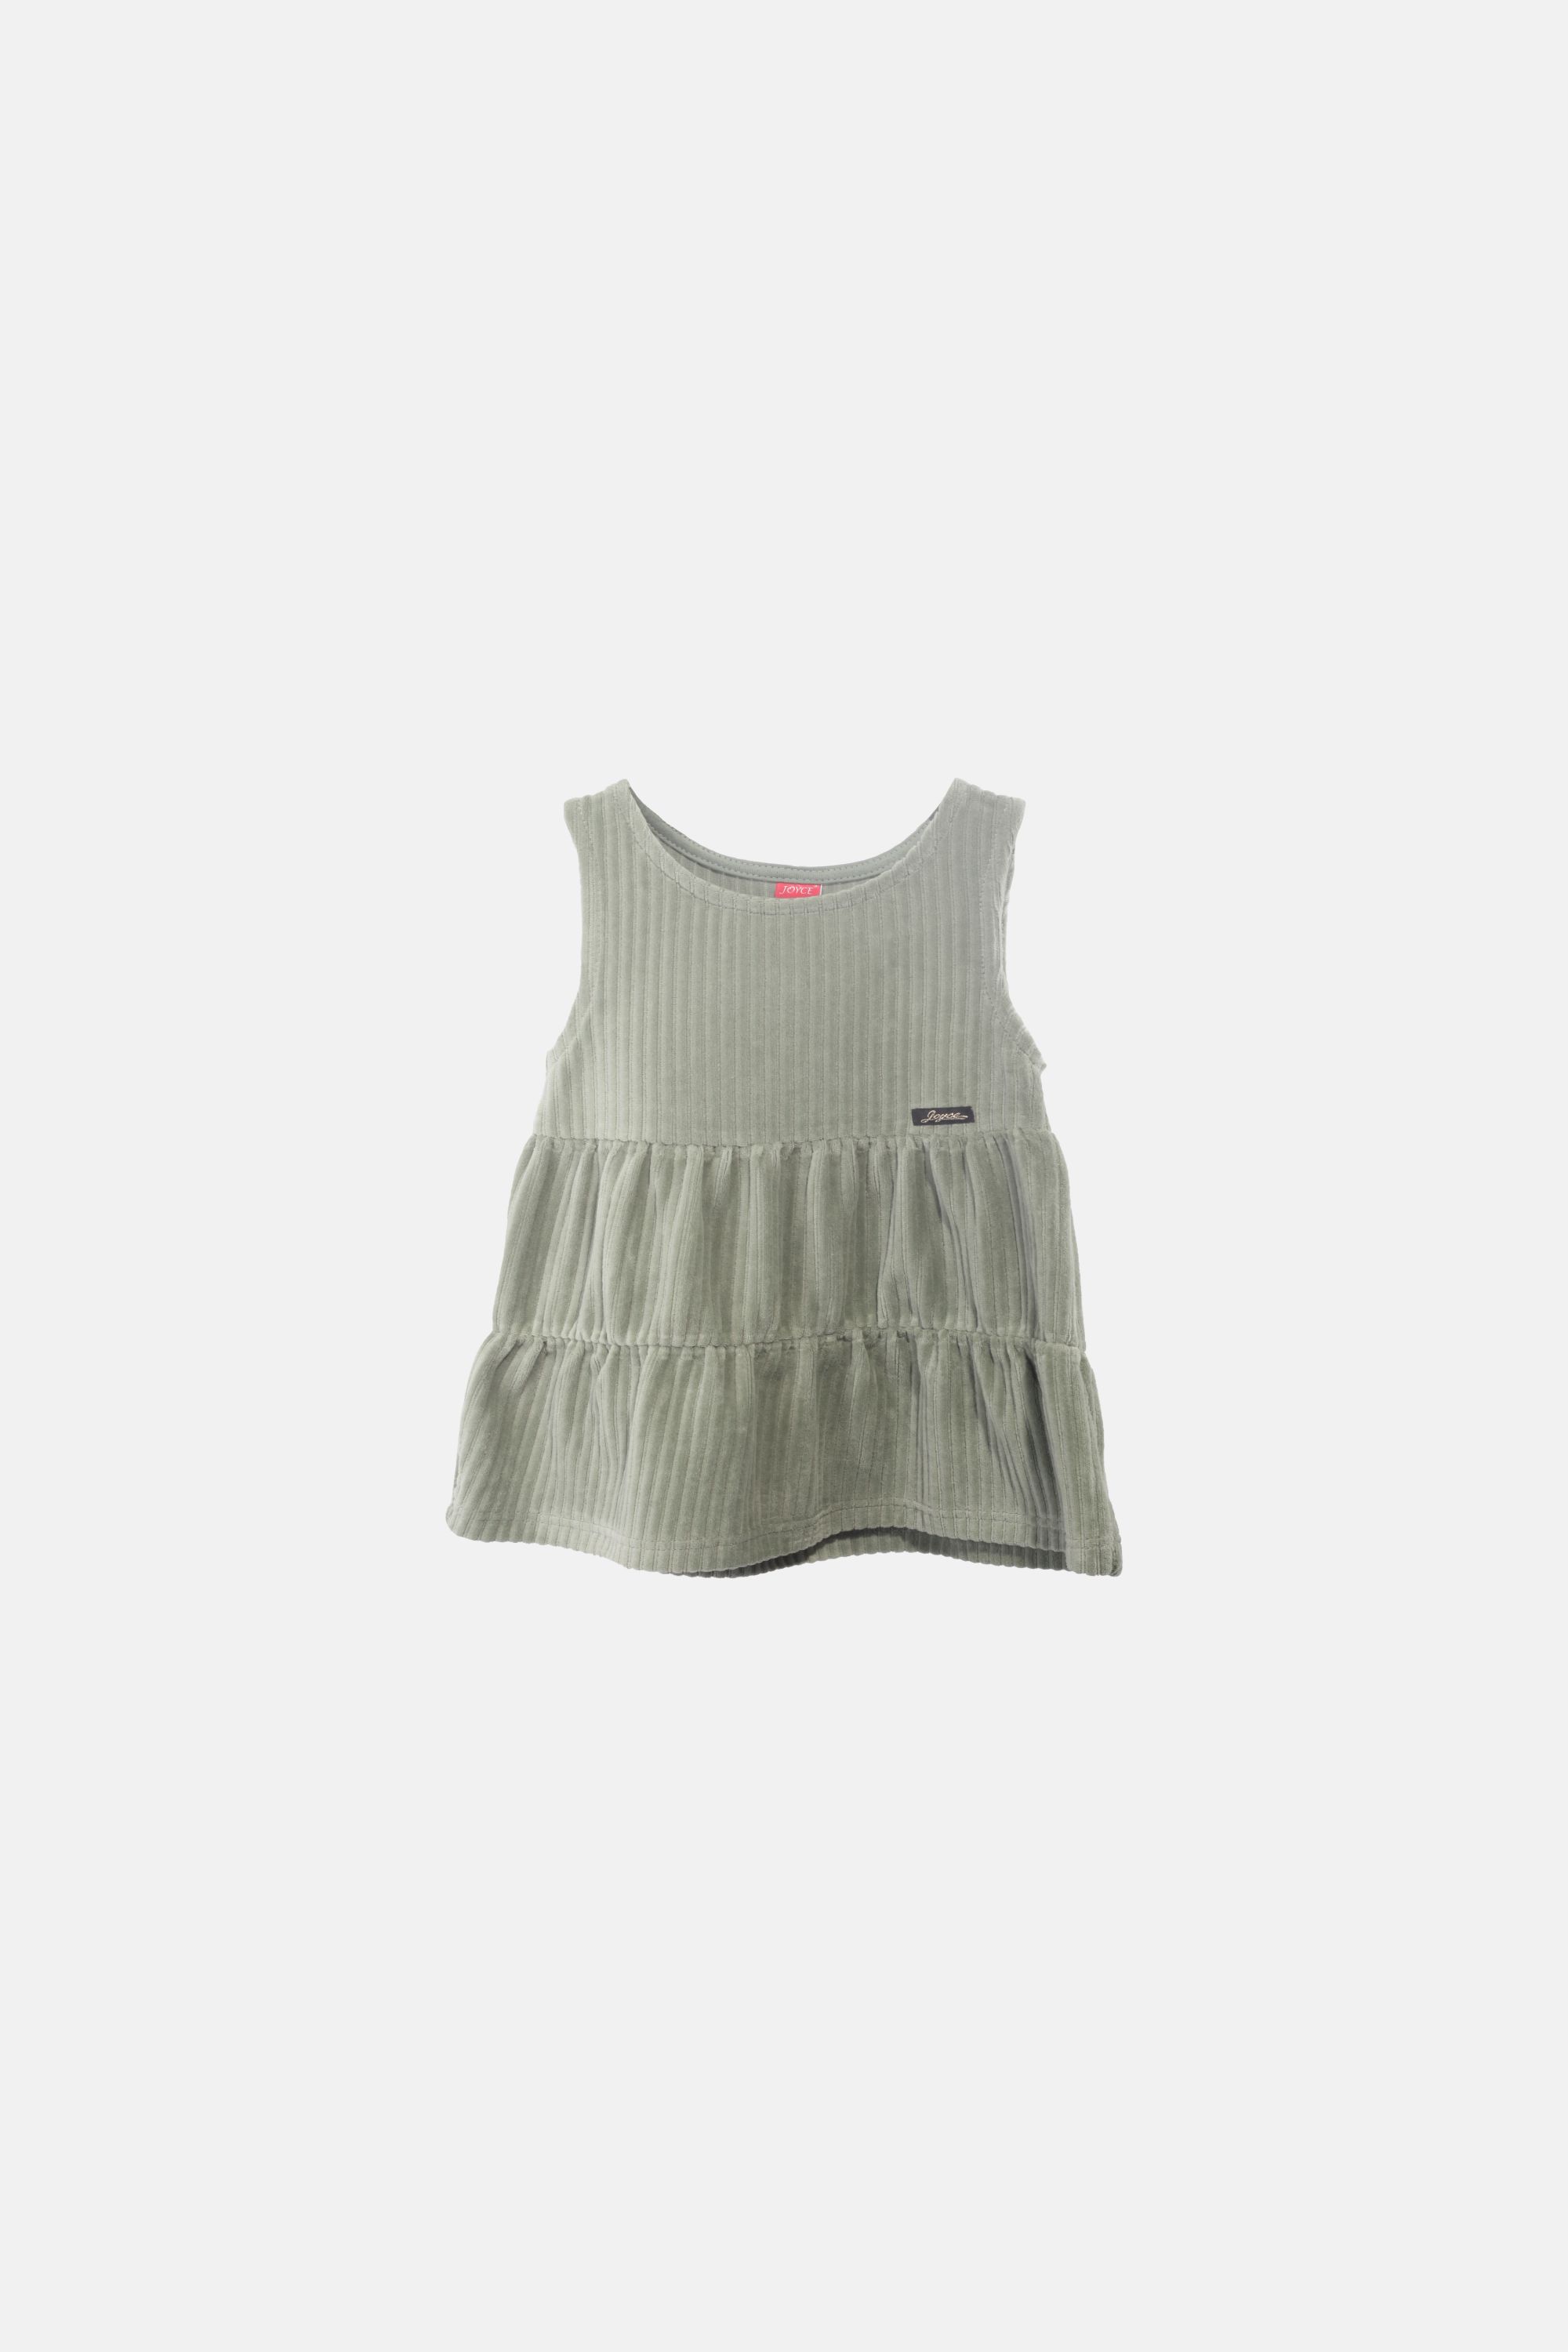 Dívčí velurové šaty "SARAFAN DRESS"/Šedá, růžová, zelená, hnědá Barva: Zelená, Velikost: vel. 1 (78/86 cm)